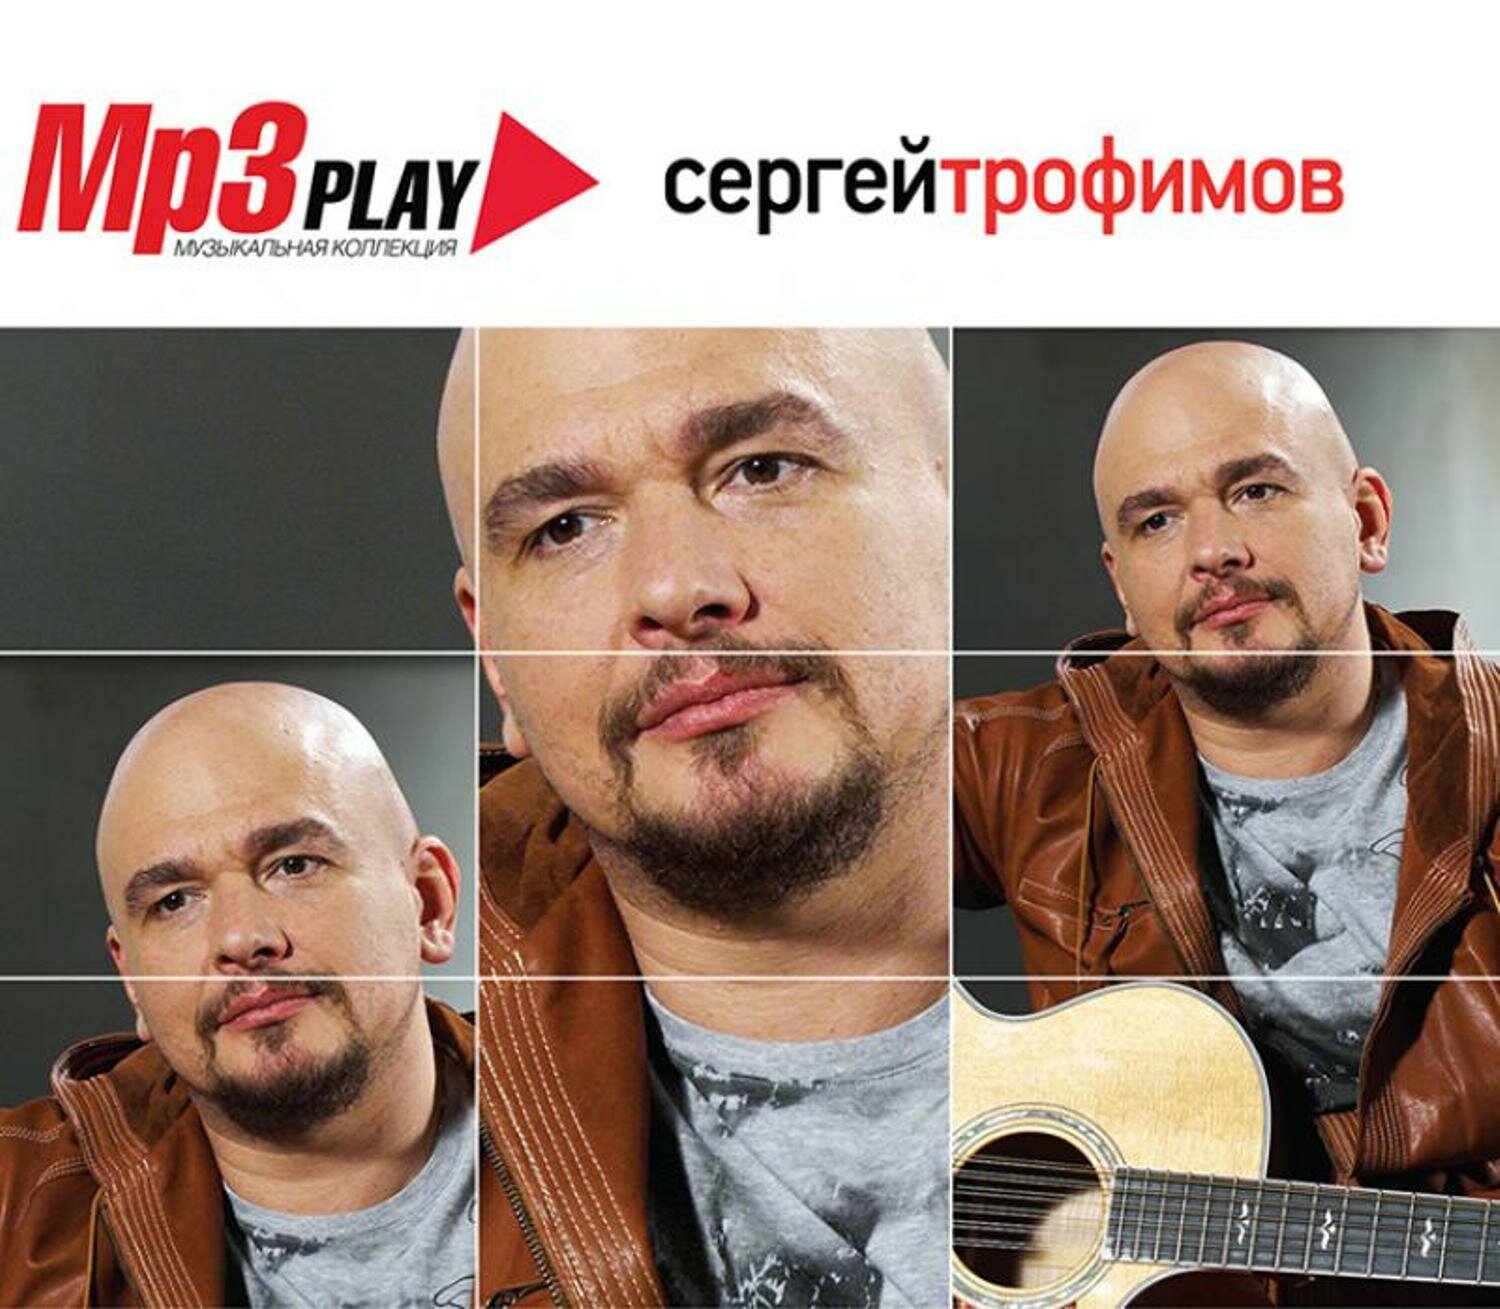 Сергей Трофимов MP3 Play Музыкальная Коллекция (MP3) Music